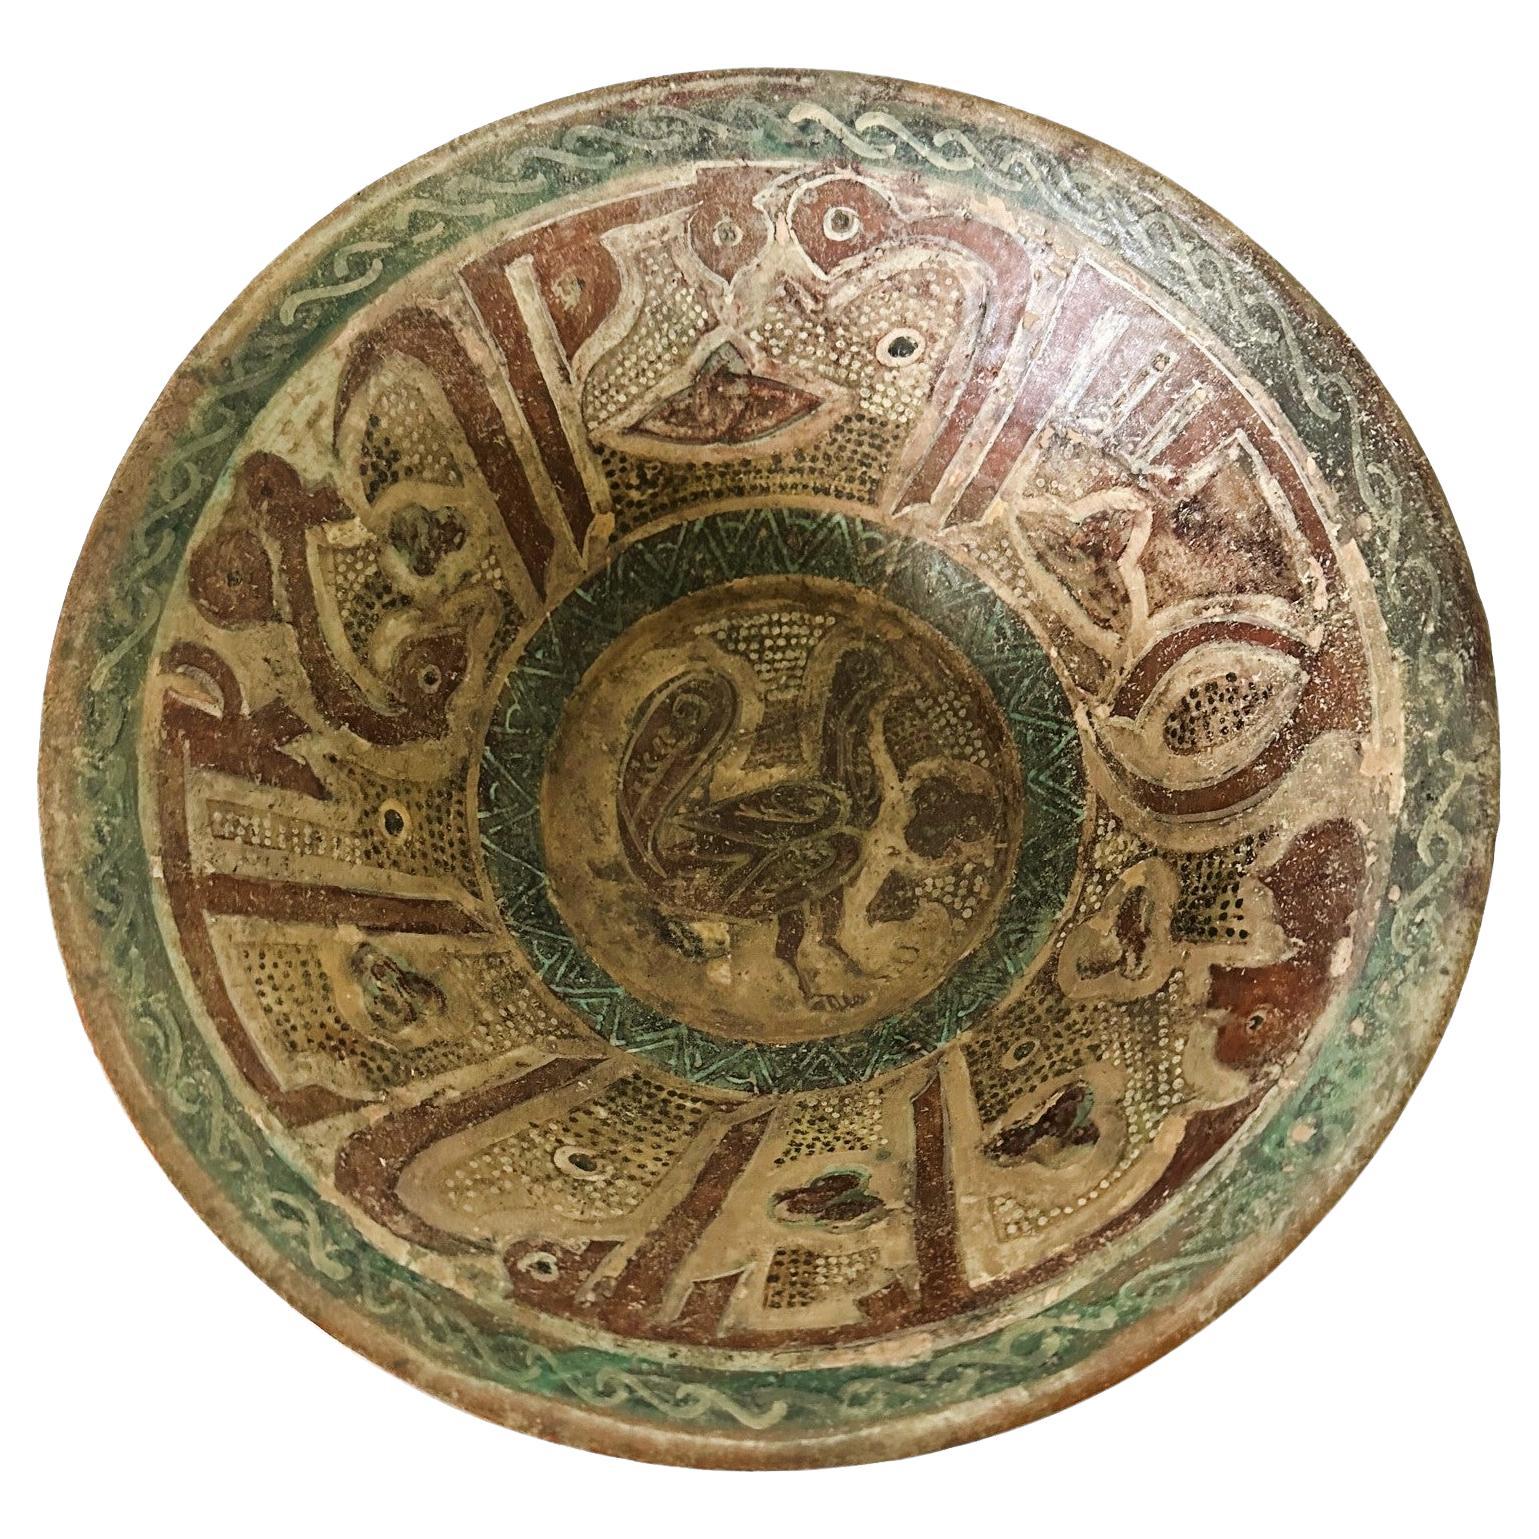 Grand bol en poterie islamique avec incision et peinture à glissière